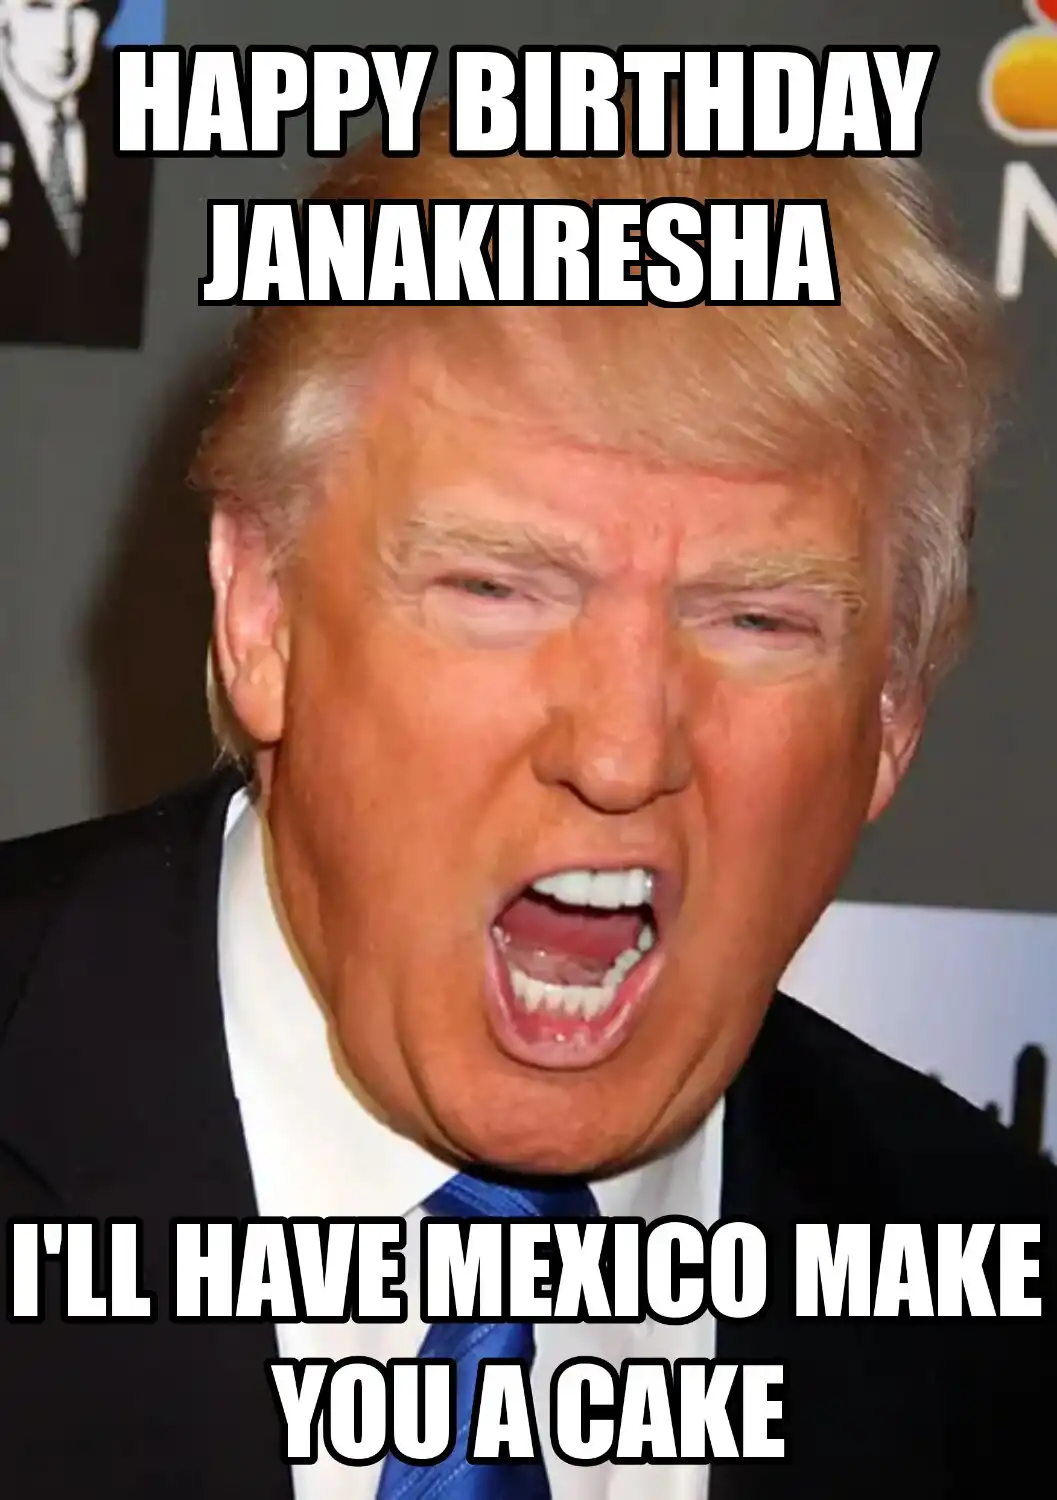 Happy Birthday Janakiresha Mexico Make You A Cake Meme